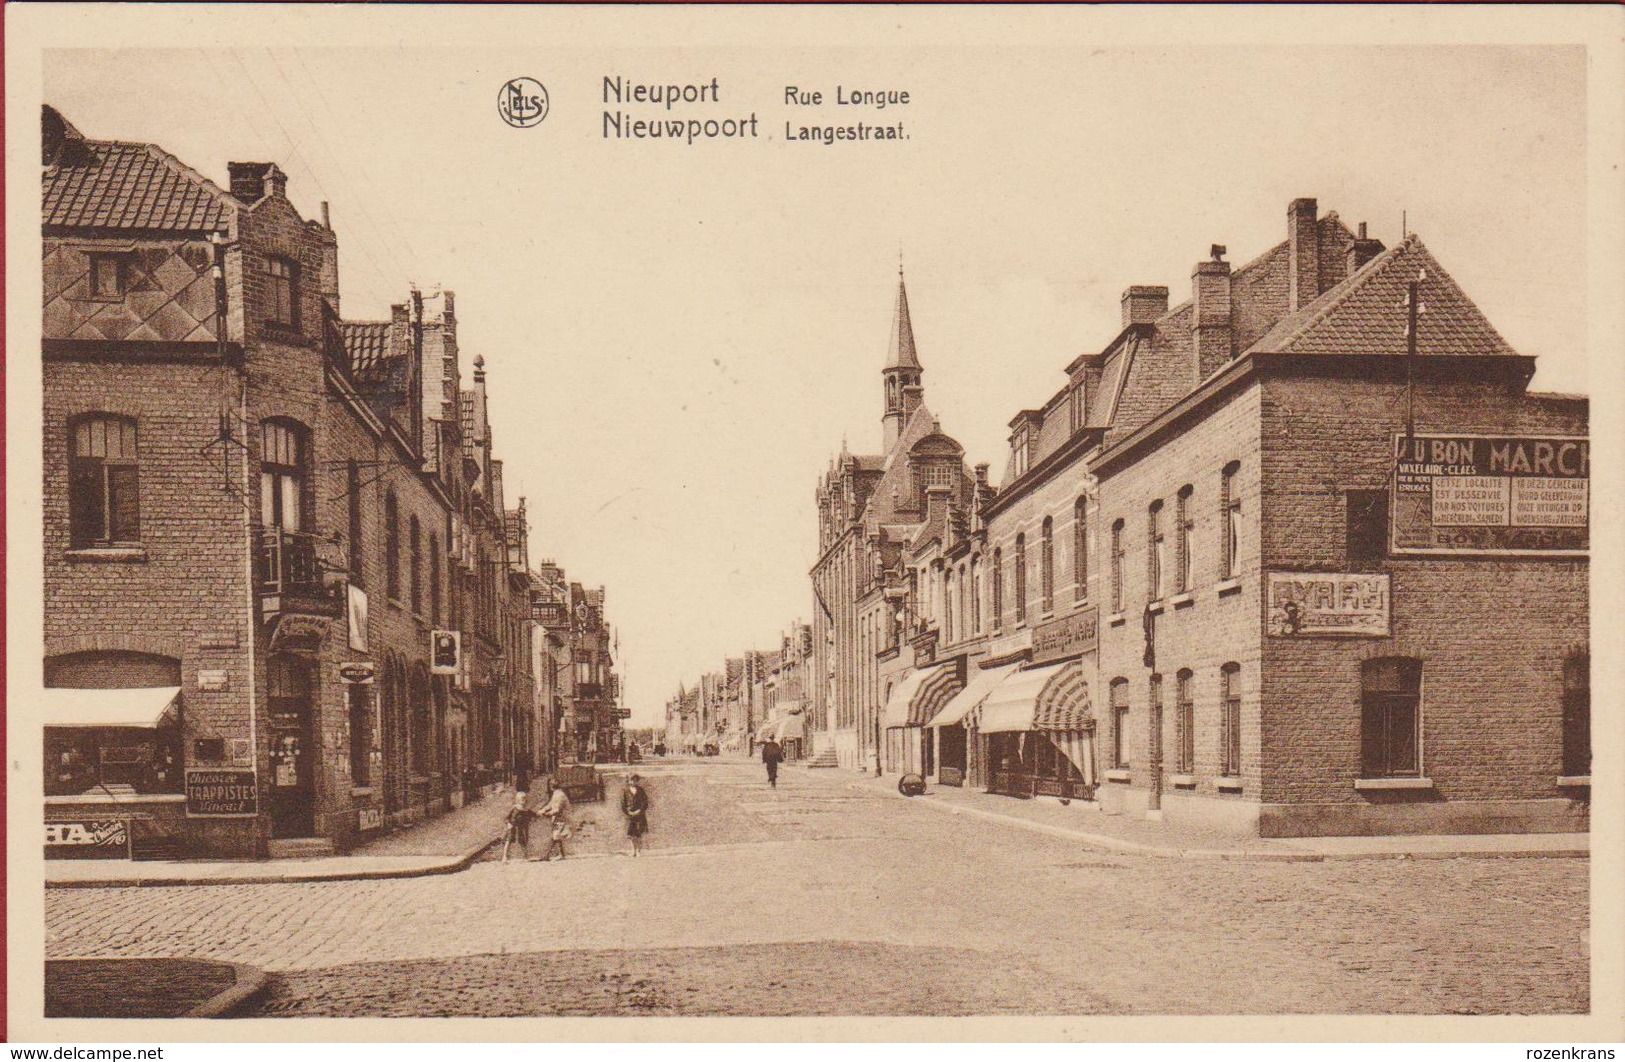 Nieuwpoort Langestraat Nieuport Rue Longue  (In Zeer Goede Staat) Muurreclame  BYRRH Chicoree Trappistes Vincart - Nieuwpoort